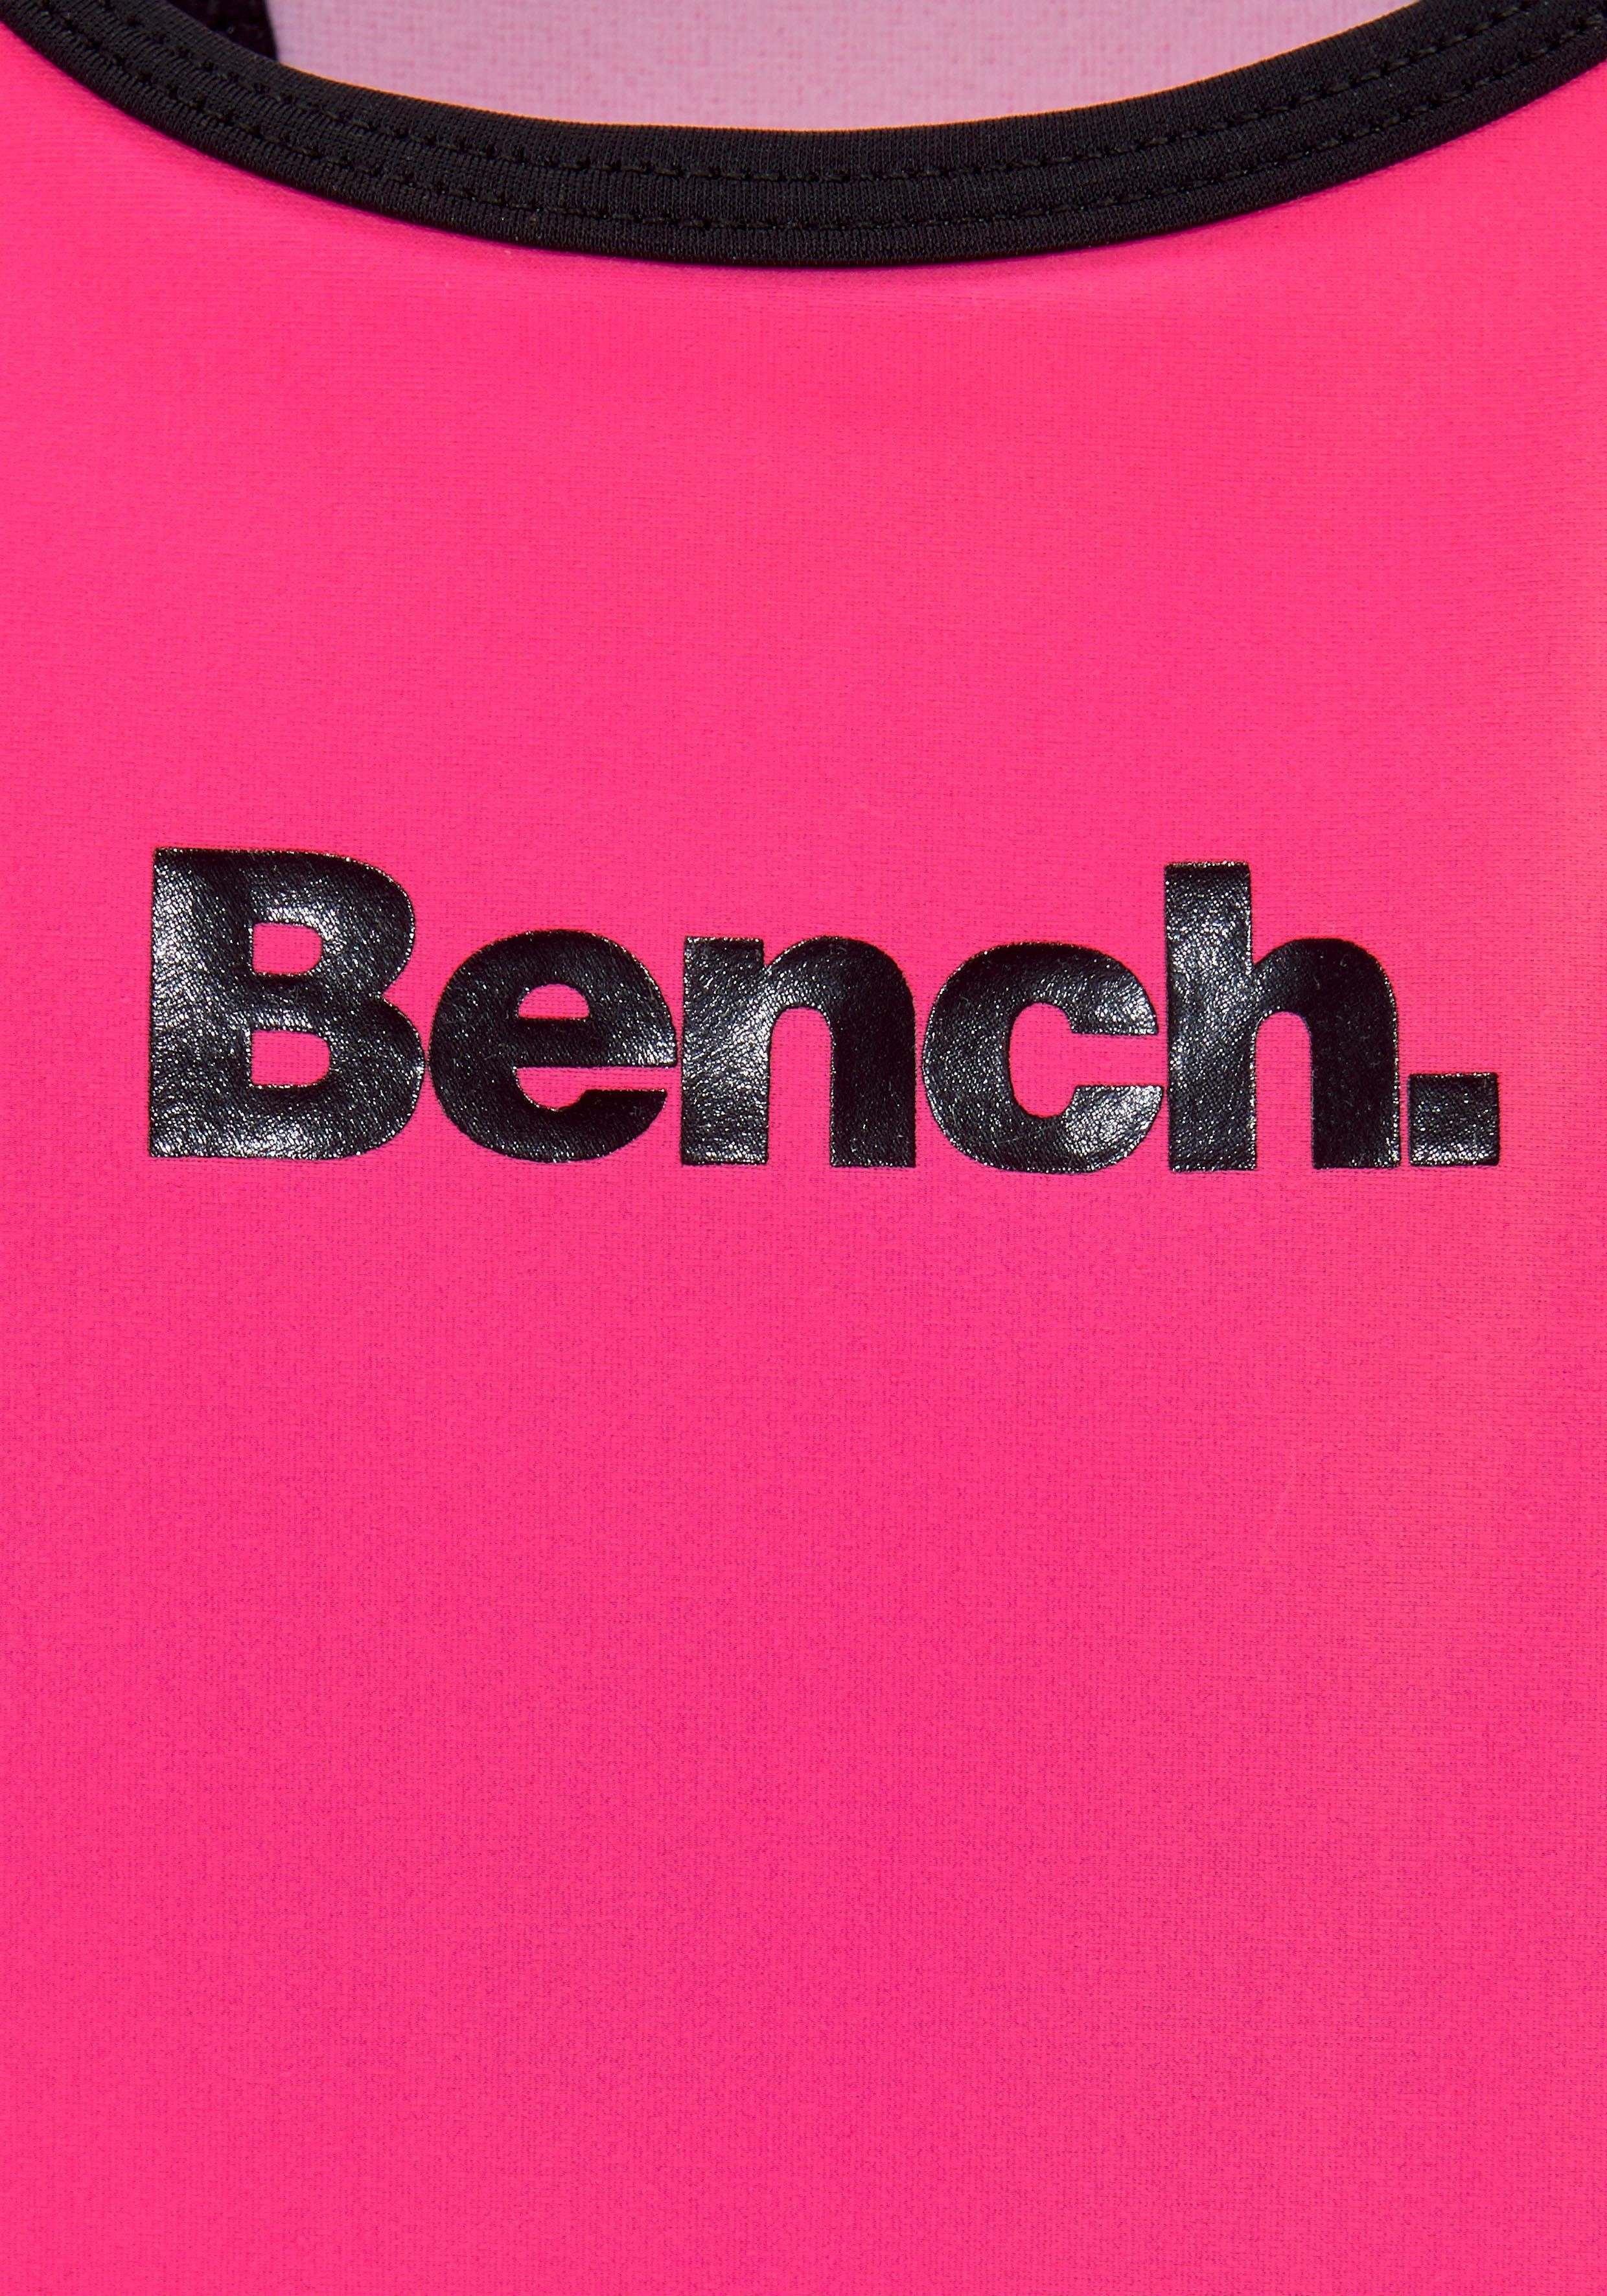 mit Bench. Logoprint pink-schwarz Badeanzug